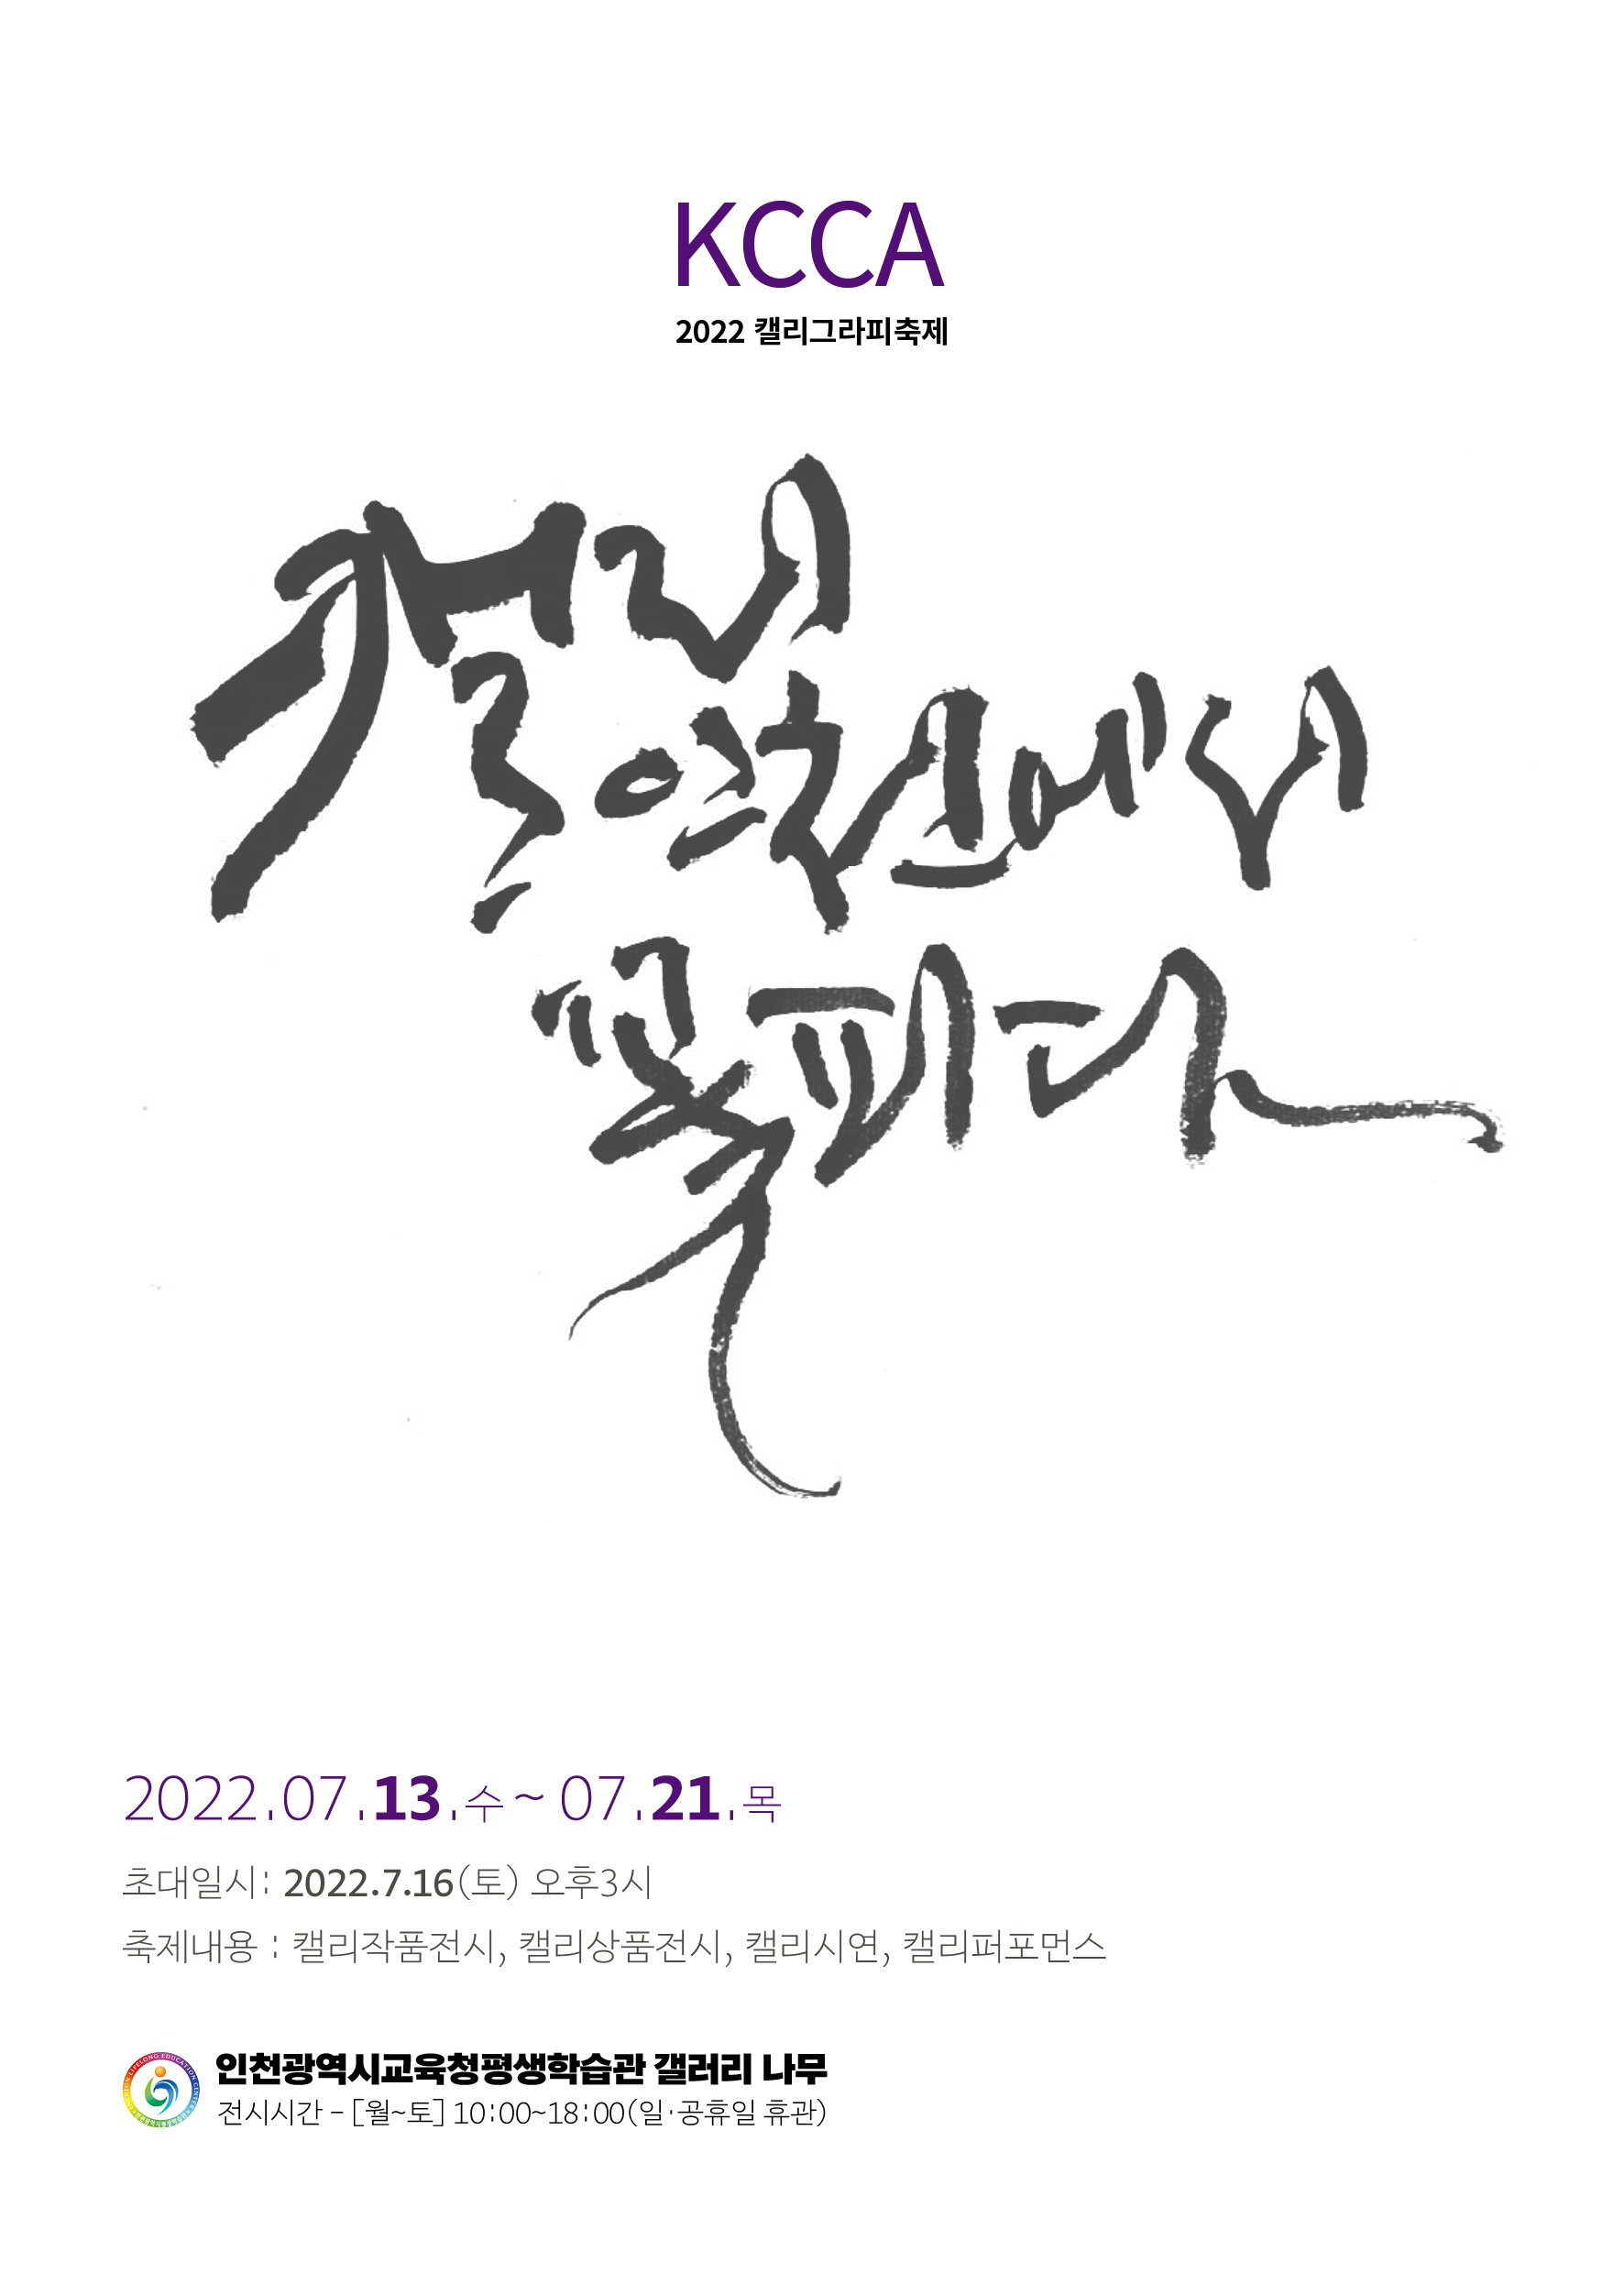 캘리, 인천에 꽃피다 – KCCA 캘리 축제 관련 포스터 - 자세한 내용은 본문참조